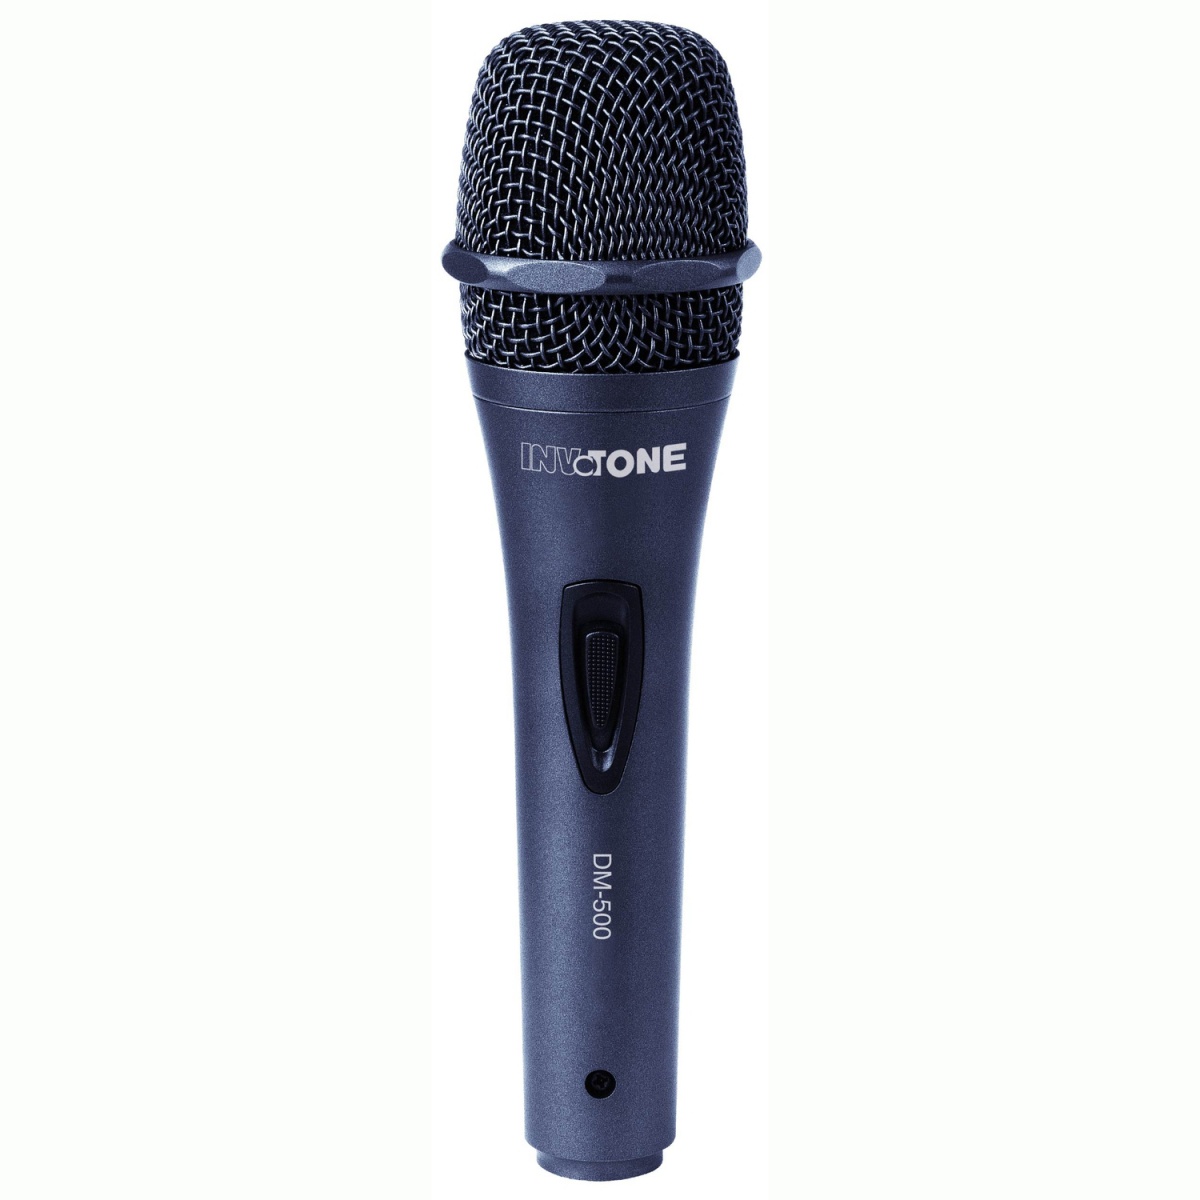 INVOTONE DM500 - Микрофон динамический кардиоидный 60…16000 Гц, -50 дБ, 600 Ом, выкл. 6 м кабель. купить в prostore.me